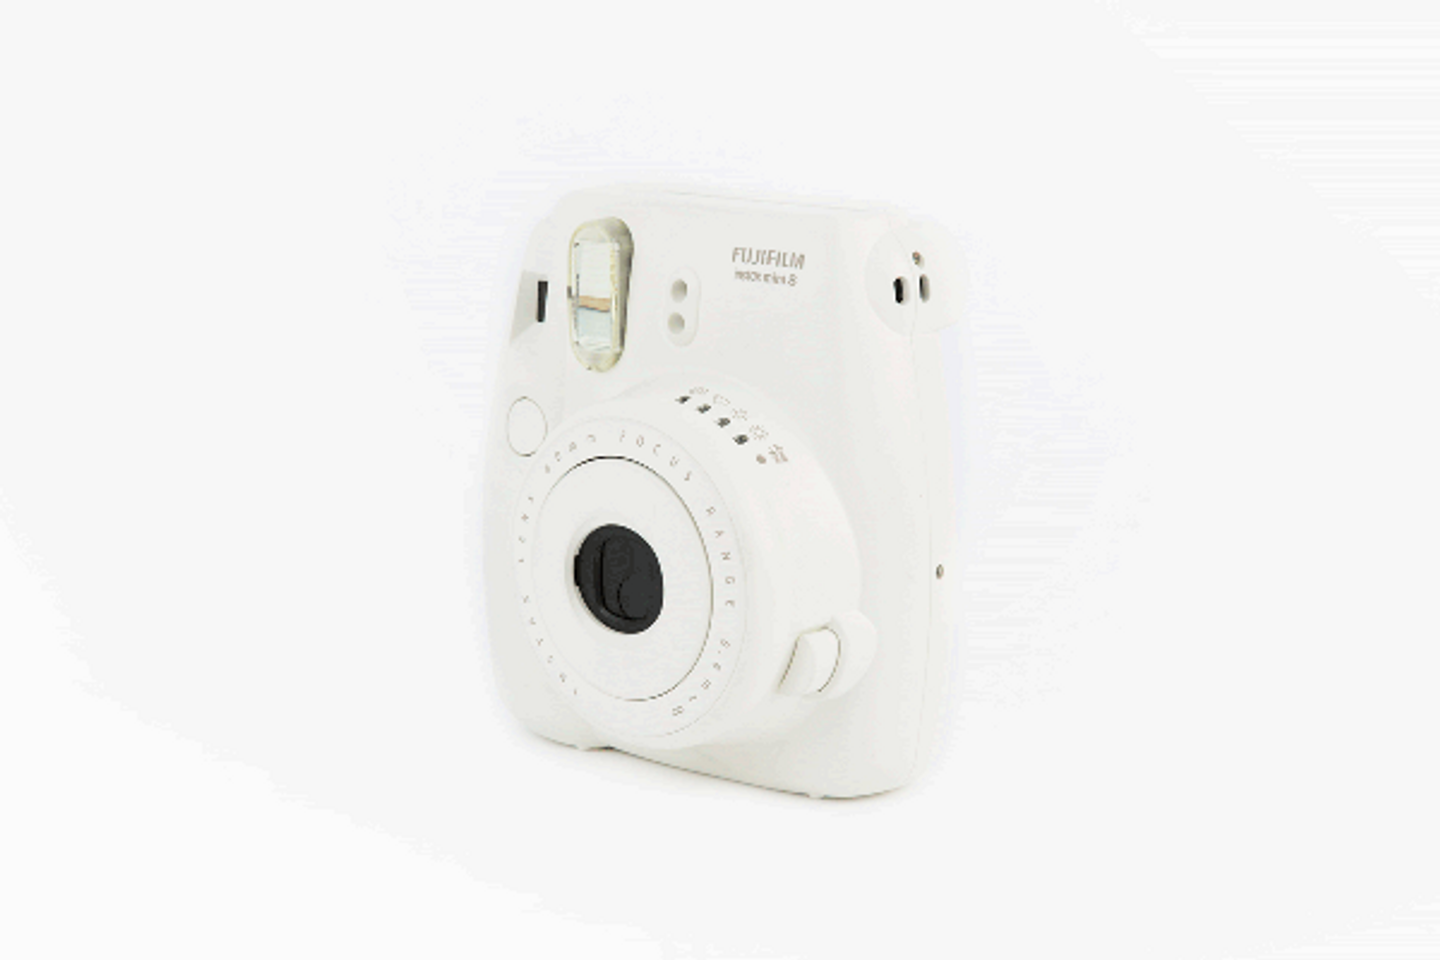 Máy chụp ảnh lấy liền Fujifilm instax mini 8s có tiêu cự cố định, đèn flash tích hợp sẵn